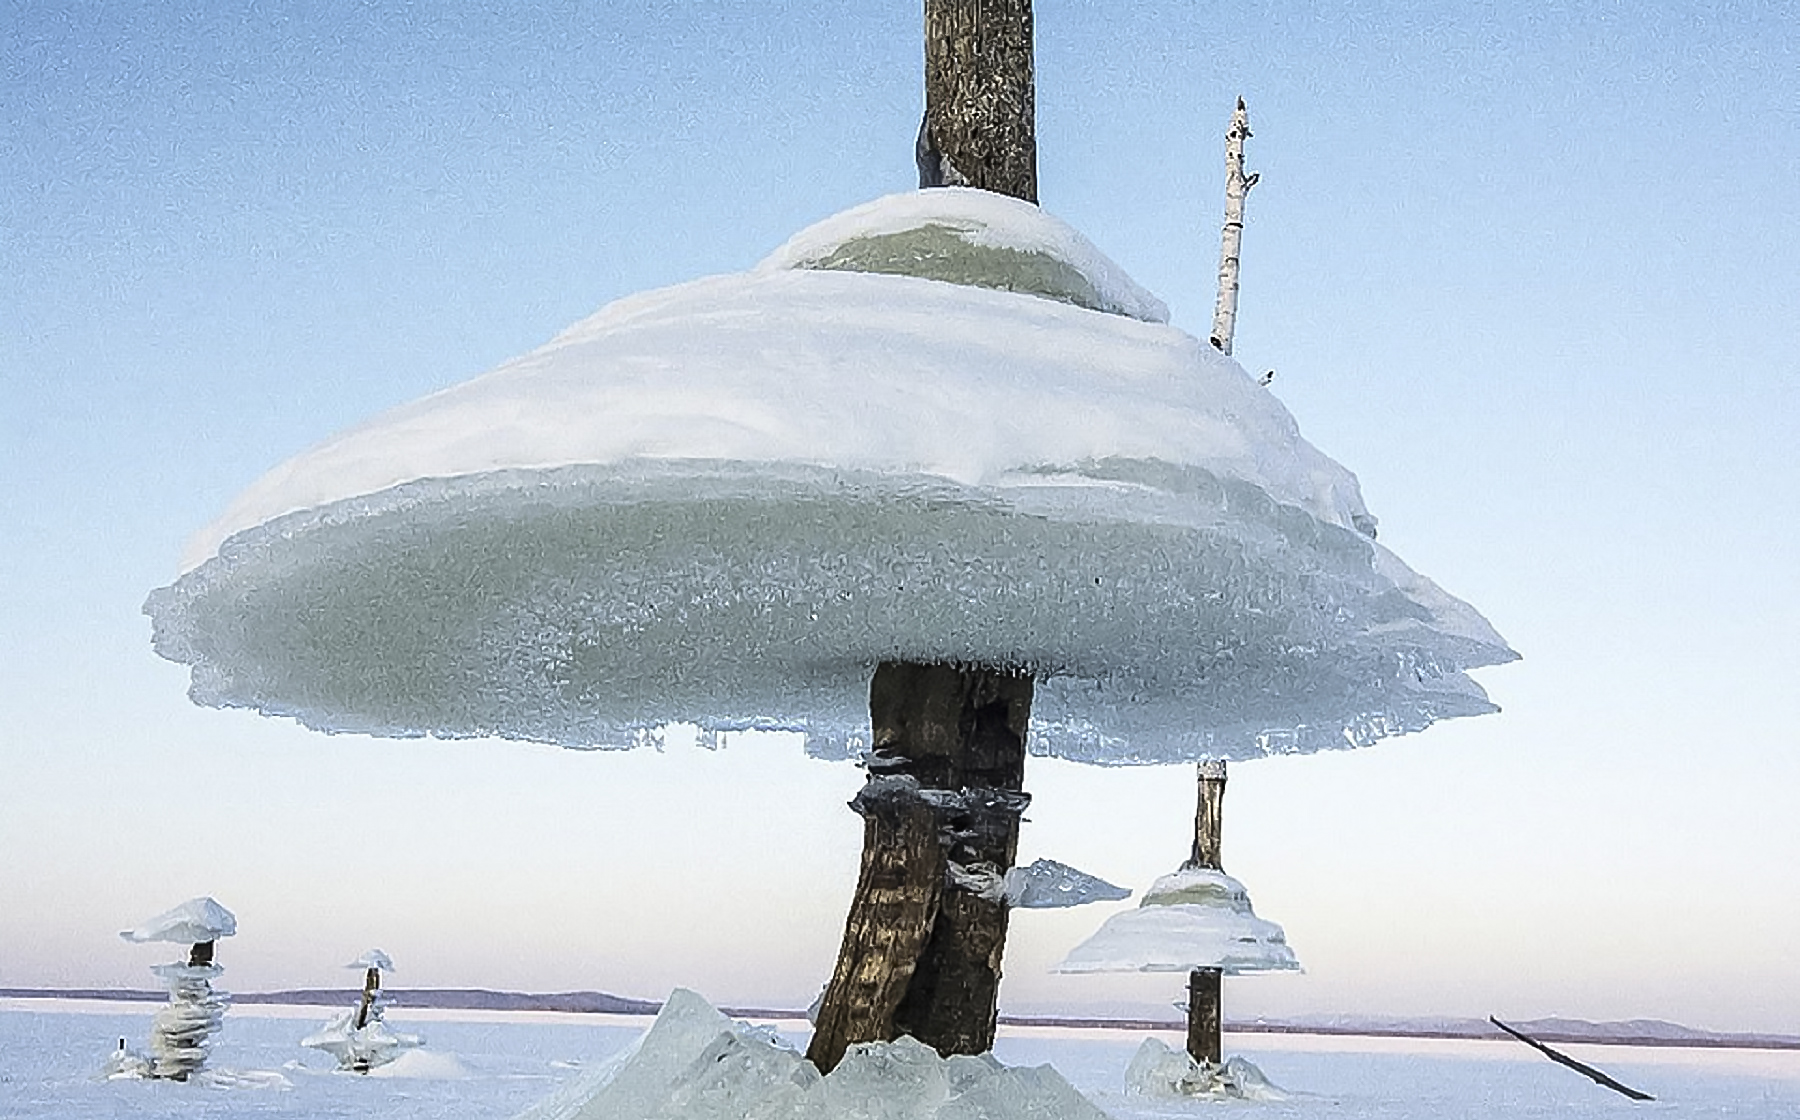  Un champignon de glace géant pris en photo en Sibérie en 2019. © AmPravda, The Siberian Times